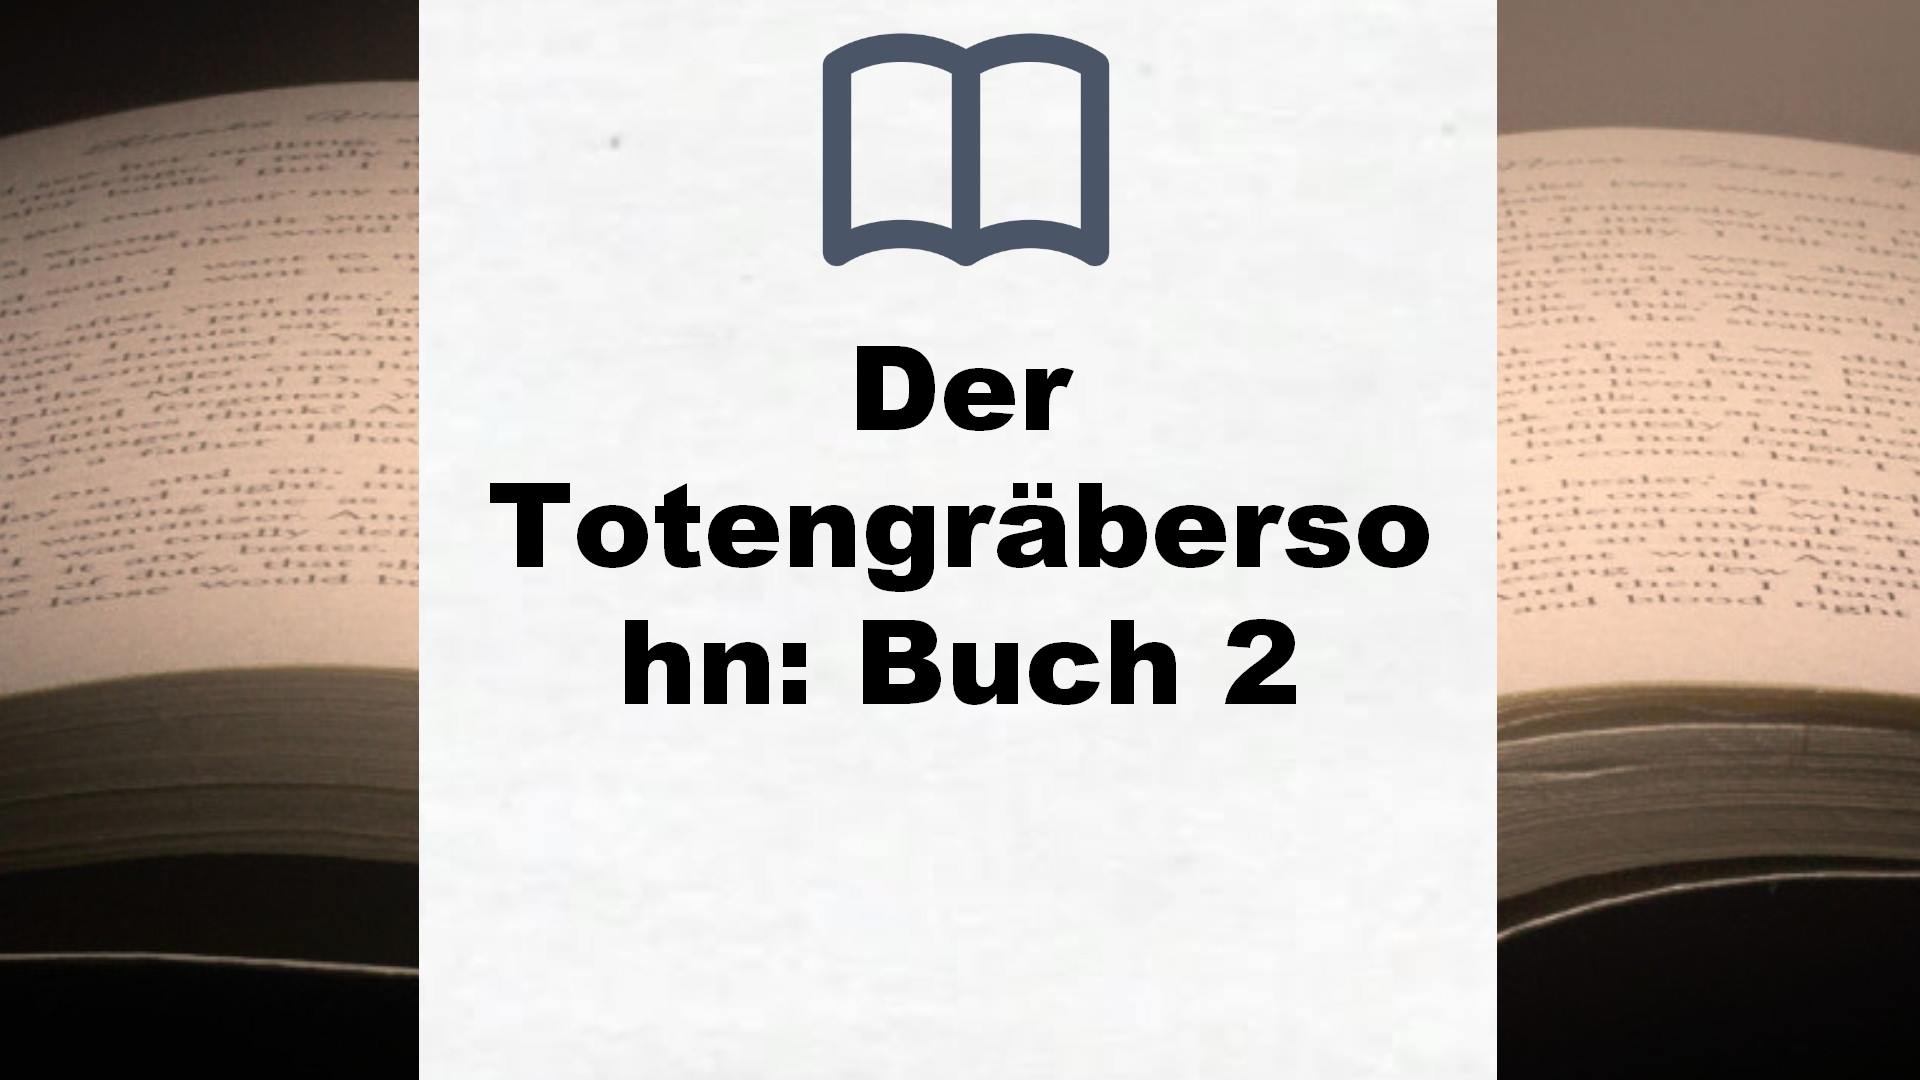 Der Totengräbersohn: Buch 2 – Buchrezension